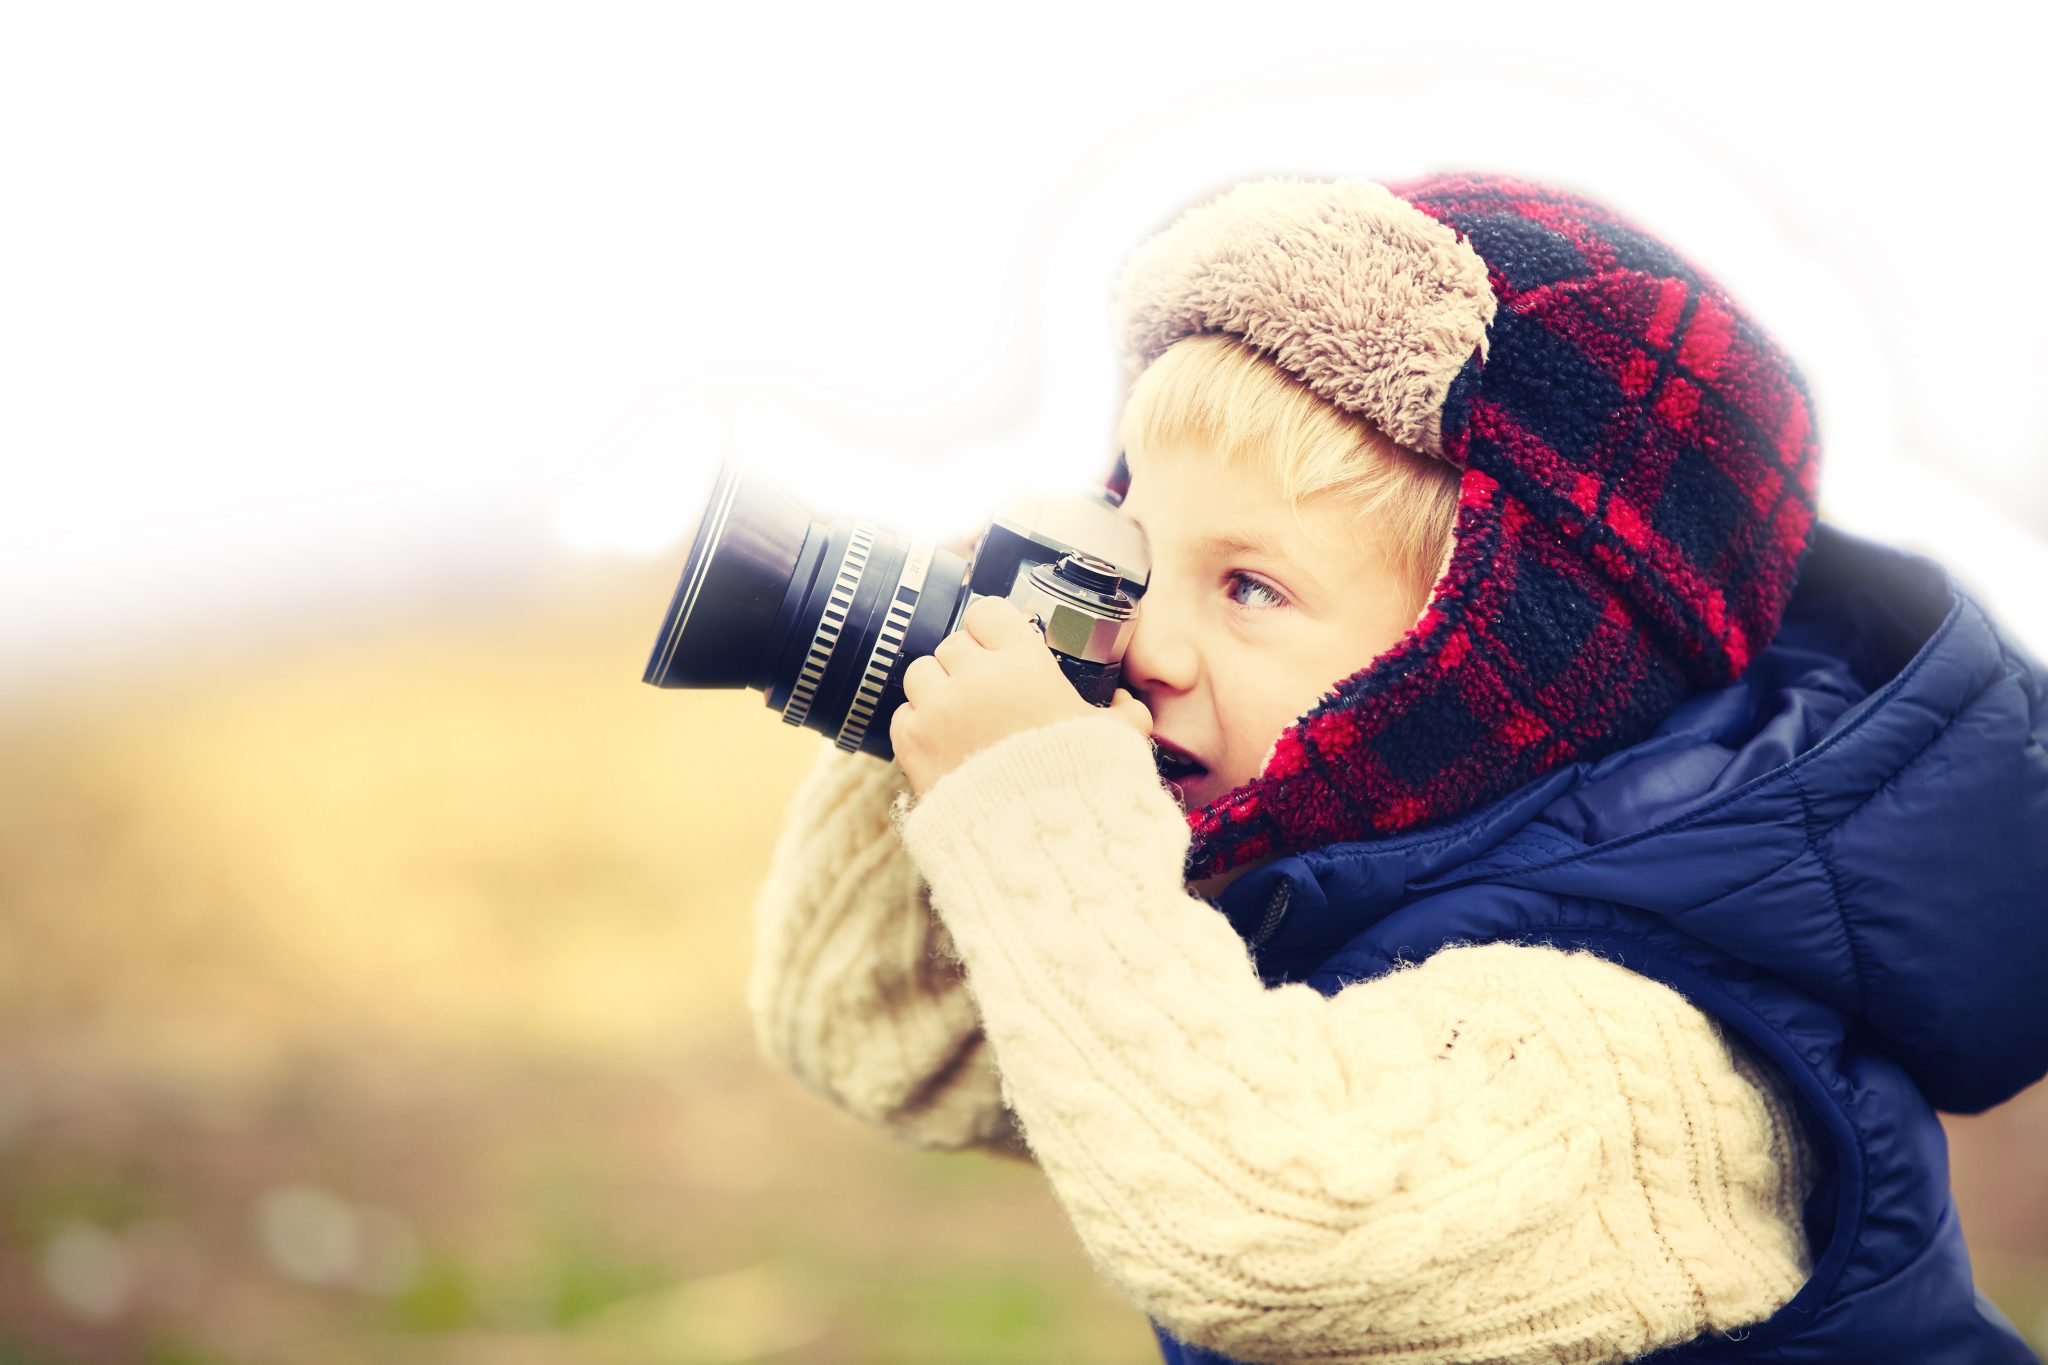 Un enfant blond avec un bonnet à carreaux rouges regarde dans un appareil photo en souriant.